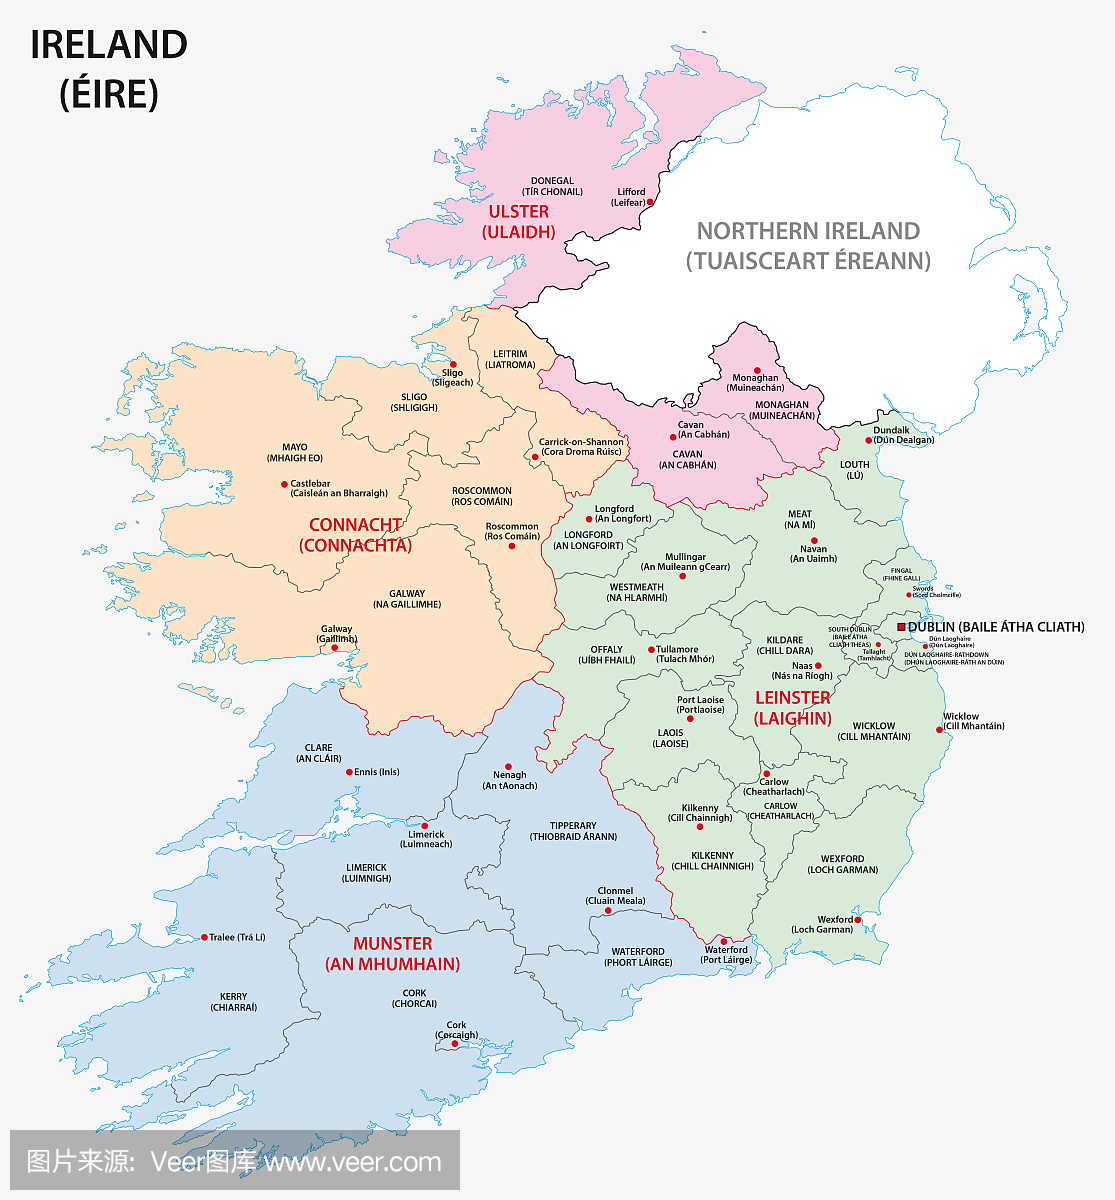 各县爱尔兰行政区划图